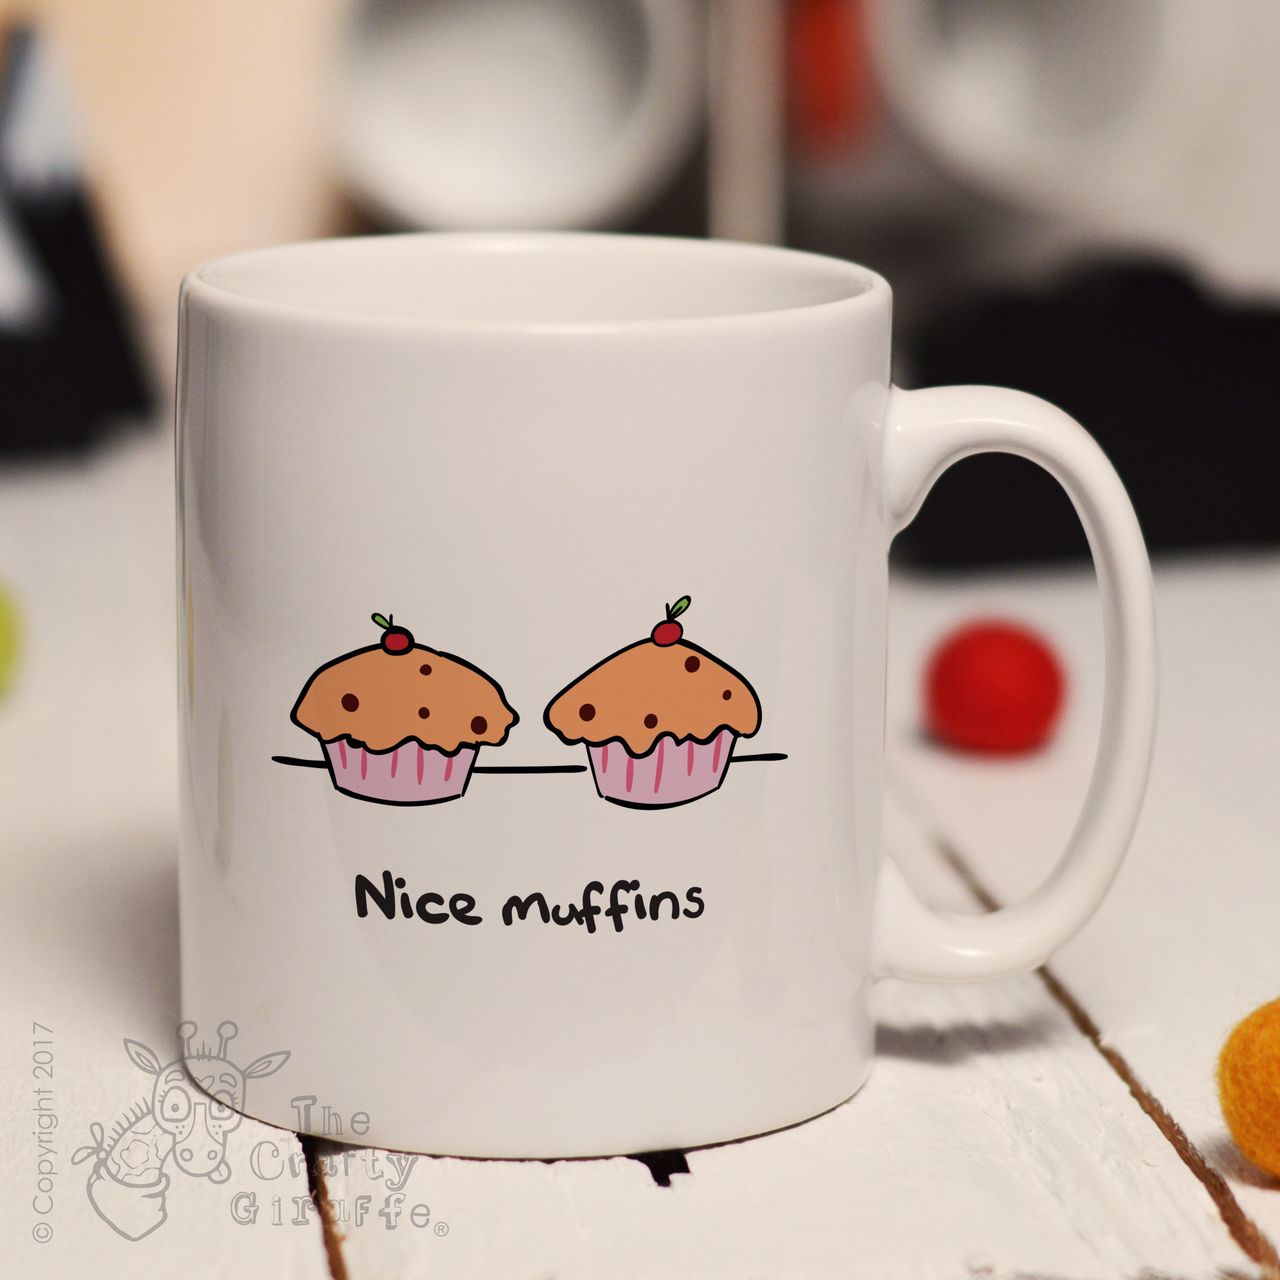 Nice muffins mug